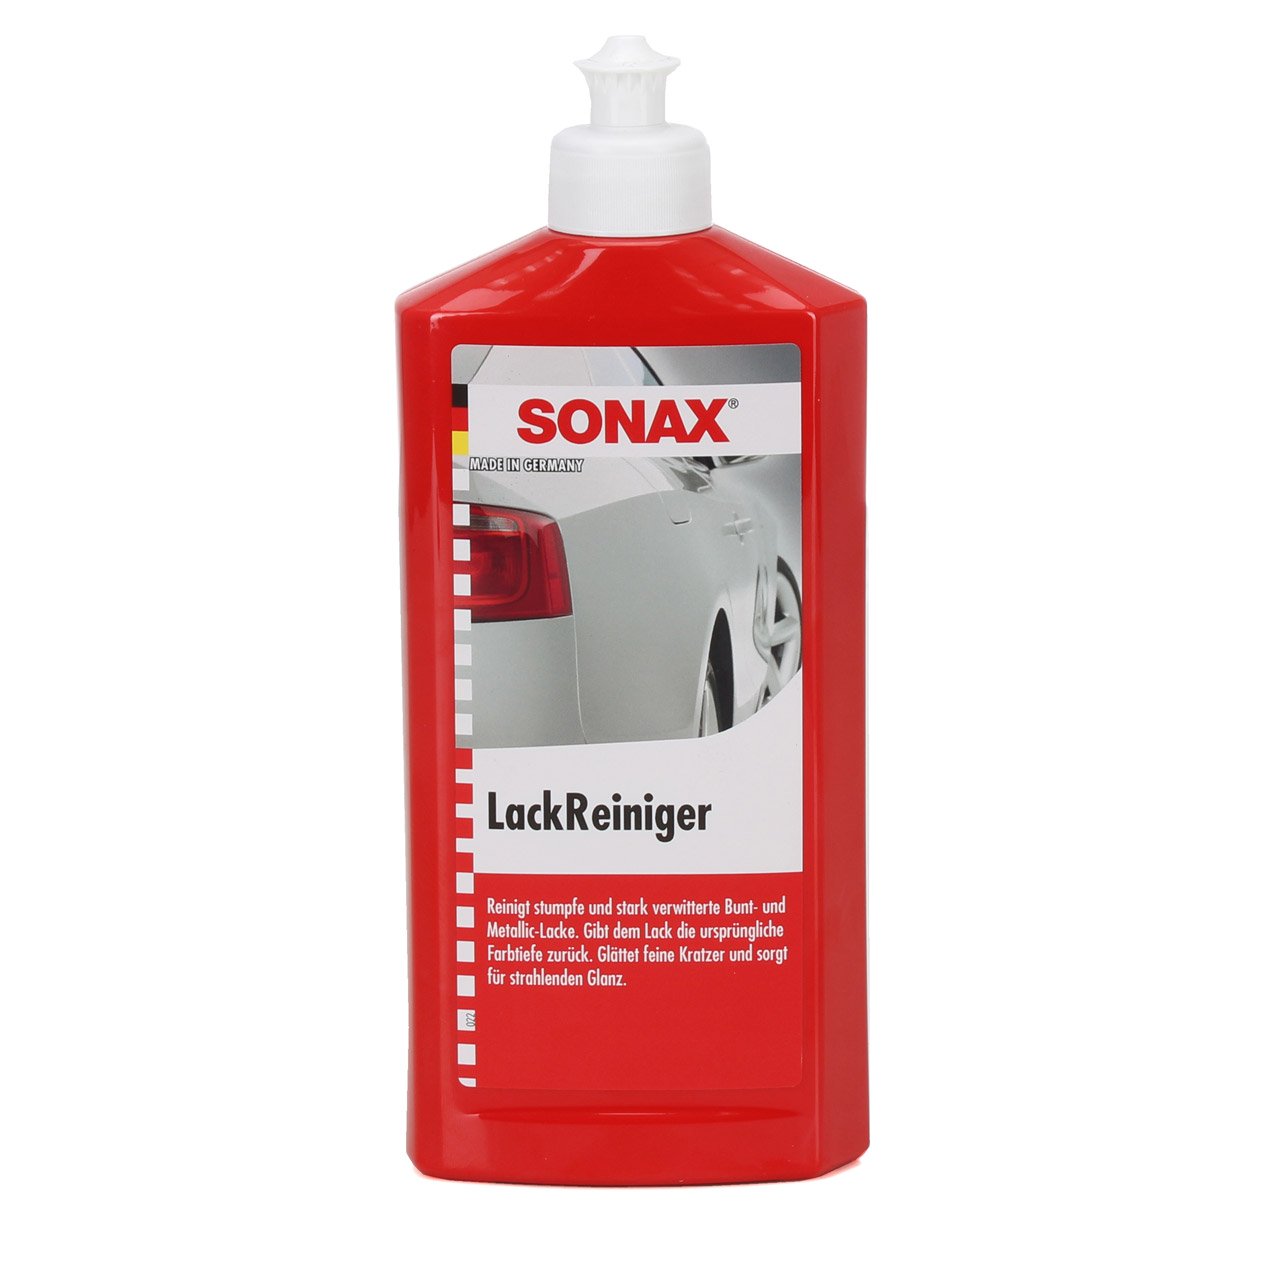 SONAX 302200 LackReiniger Lack Reiniger Politur Pflege Intensiv 500ml